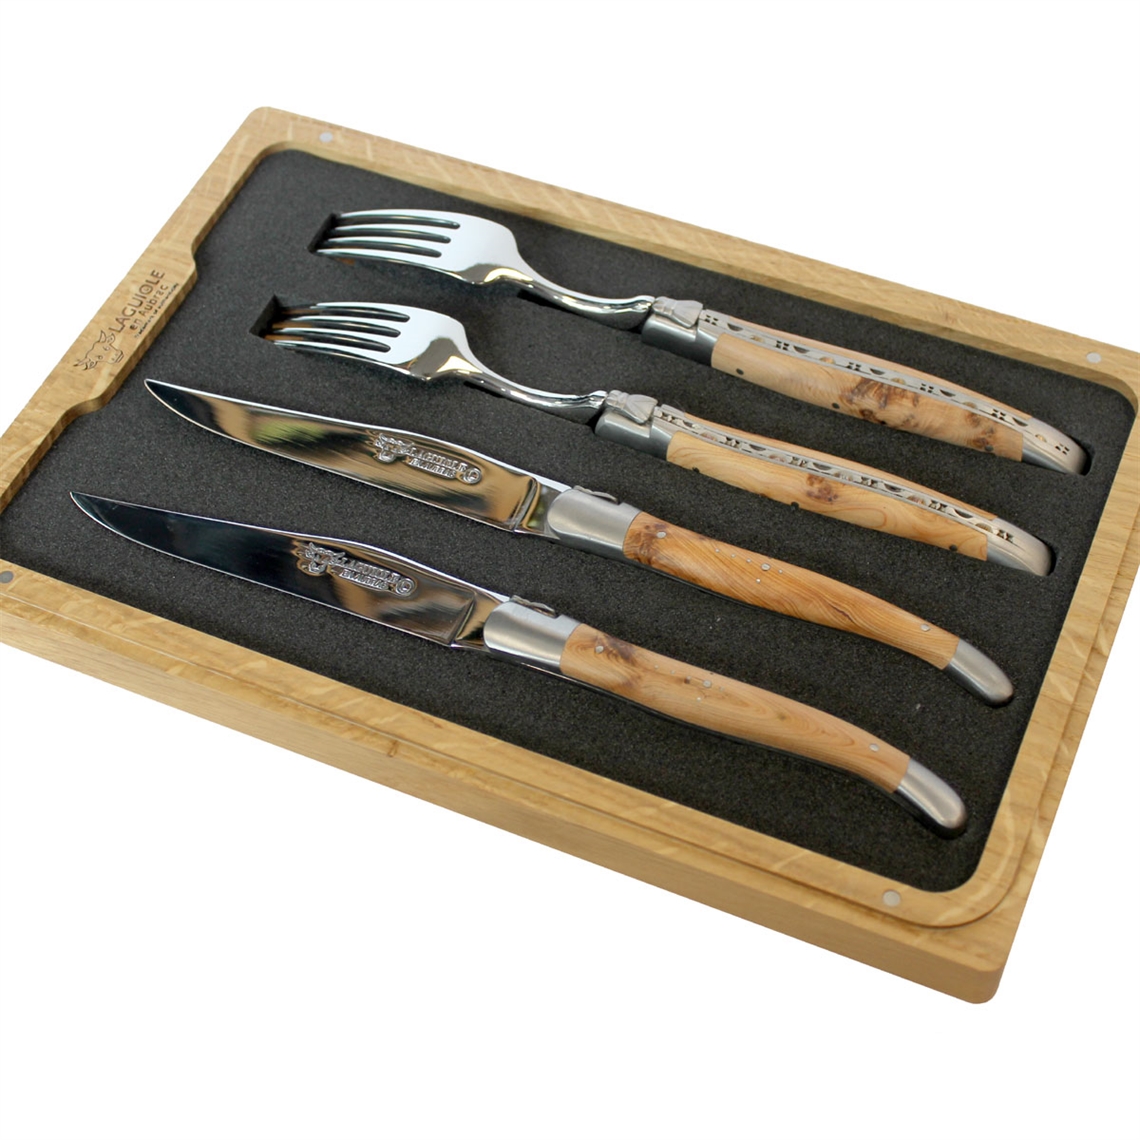 Laguiole en Aubrac 4 Piece Knife and Fork Set - Juniper Wood Handles